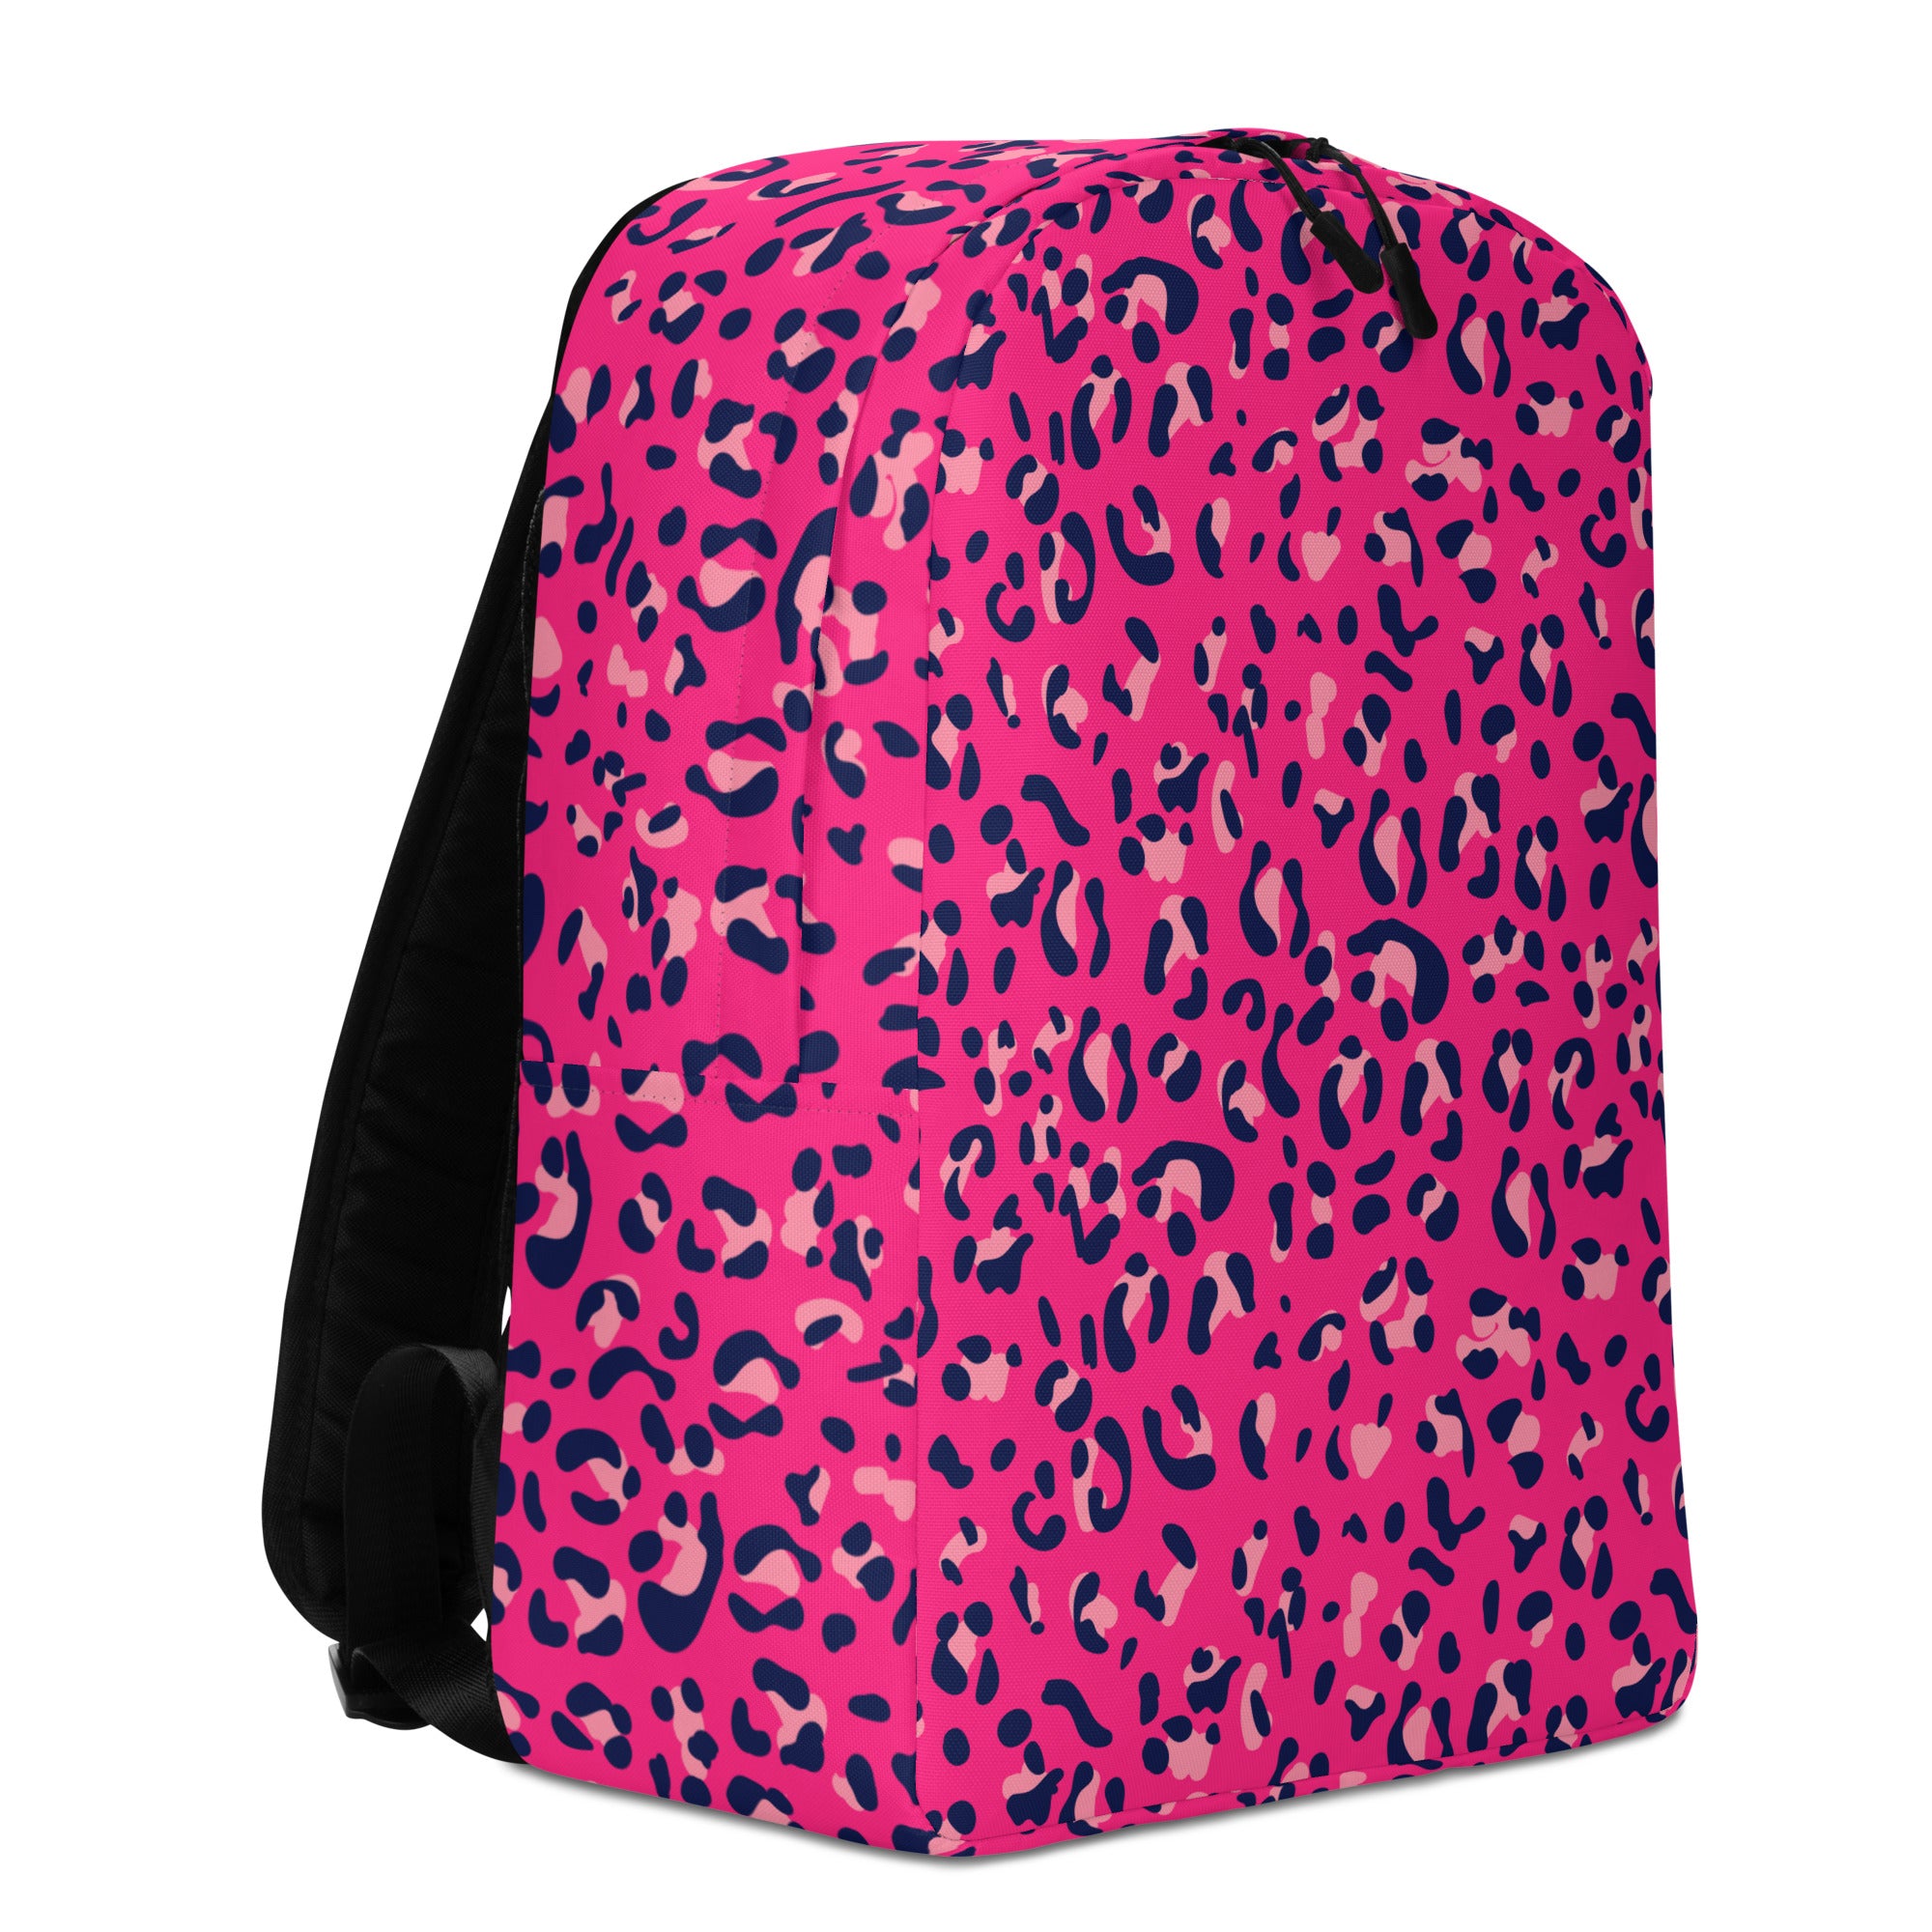 Minimalist Backpack- Leopard Print Dark Pink